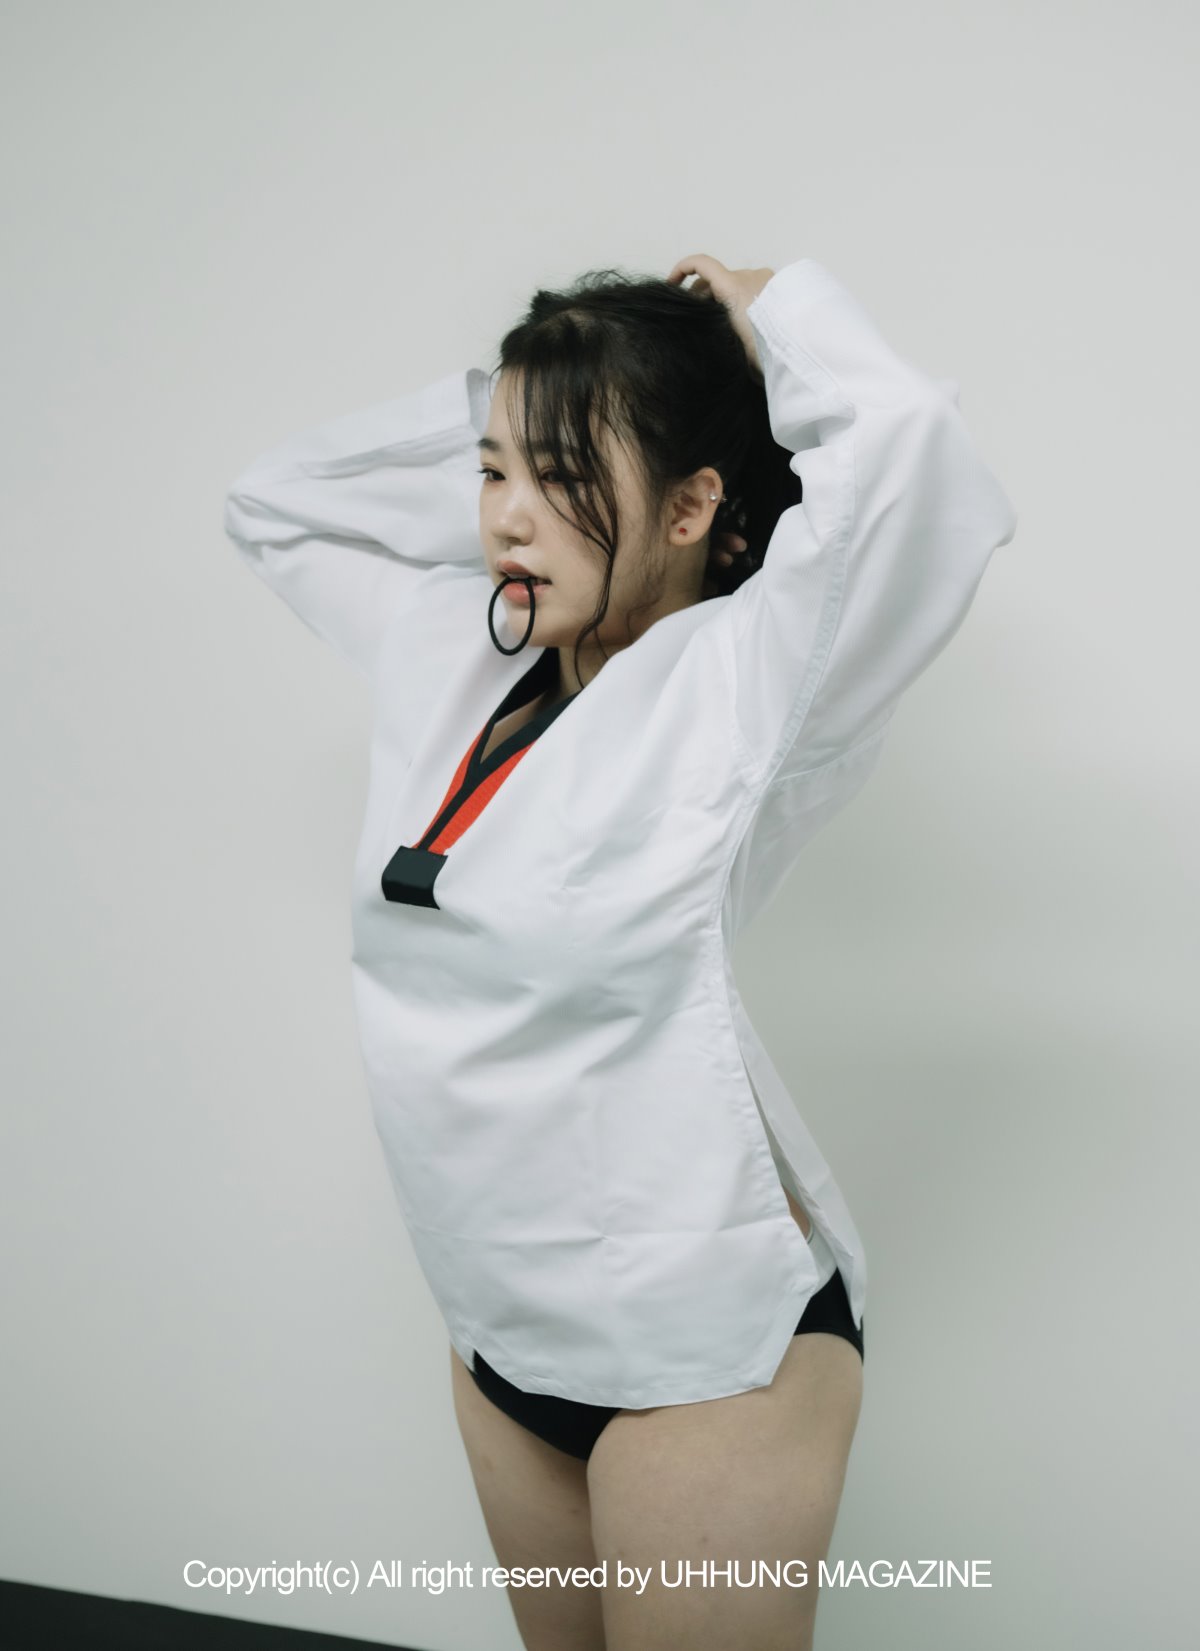 UHHUNG MAGAZINE Jenn Vol 1 Taekwondo Part1 0026 0295791385.jpg